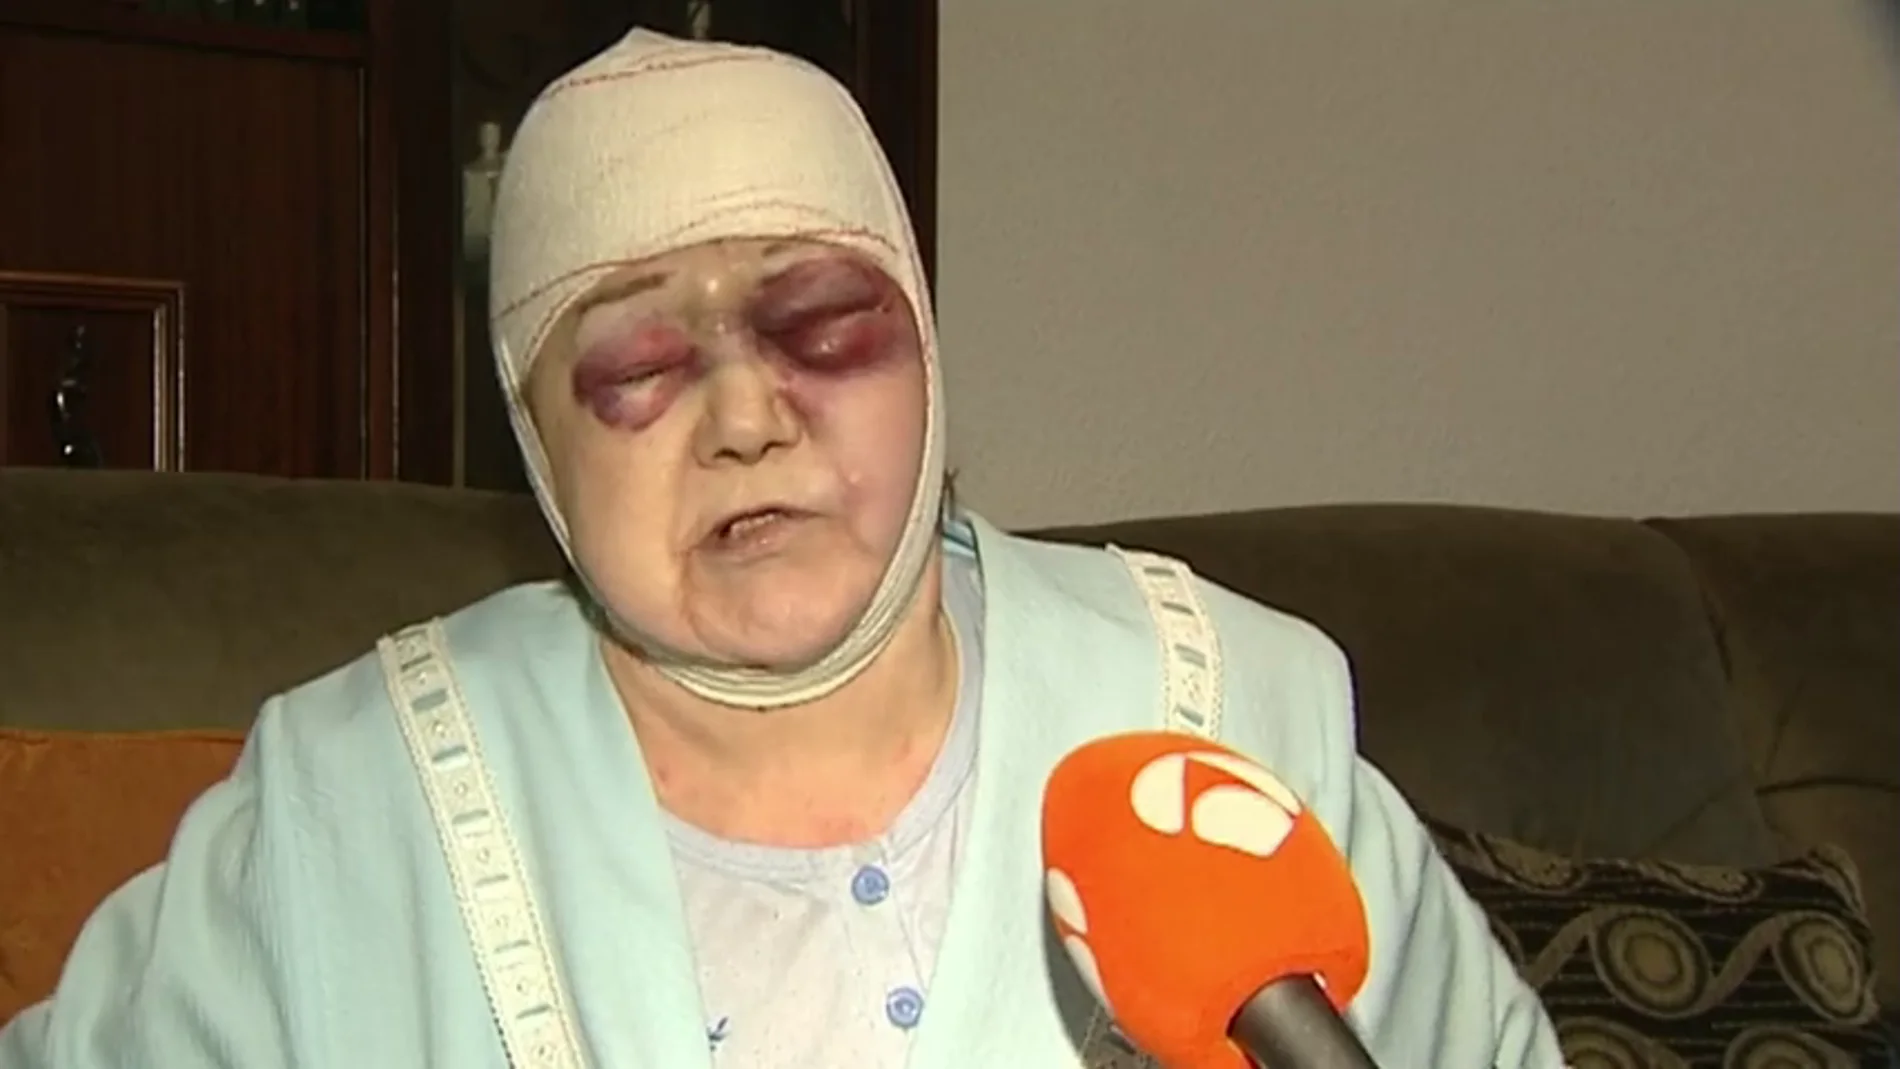 Propinan una brutal paliza a una anciana de 91 años en L'Hospitalet: "Me rajó la cabeza"